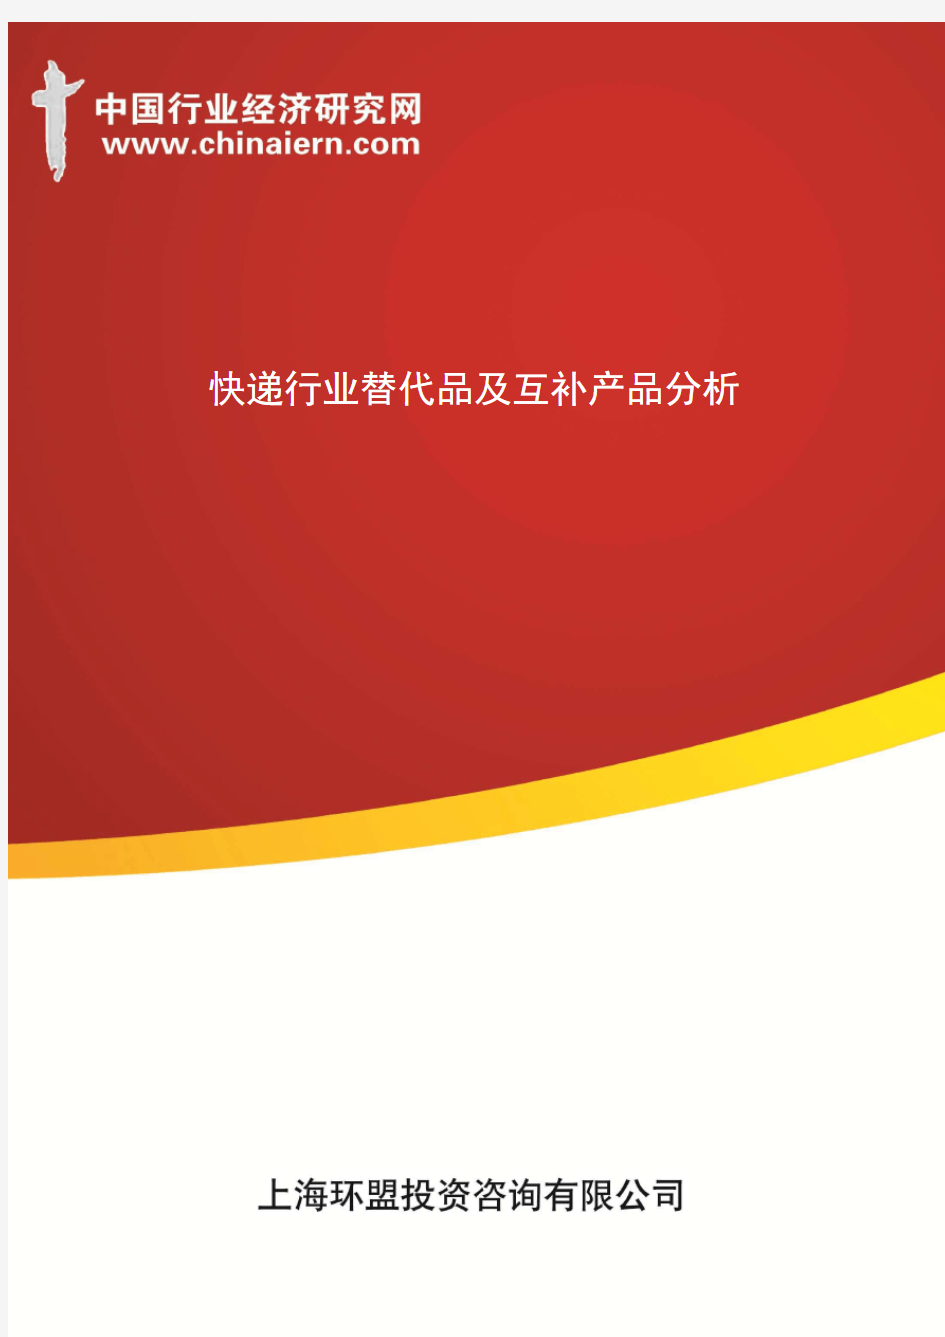 快递行业替代品及互补产品分析(上海环盟)